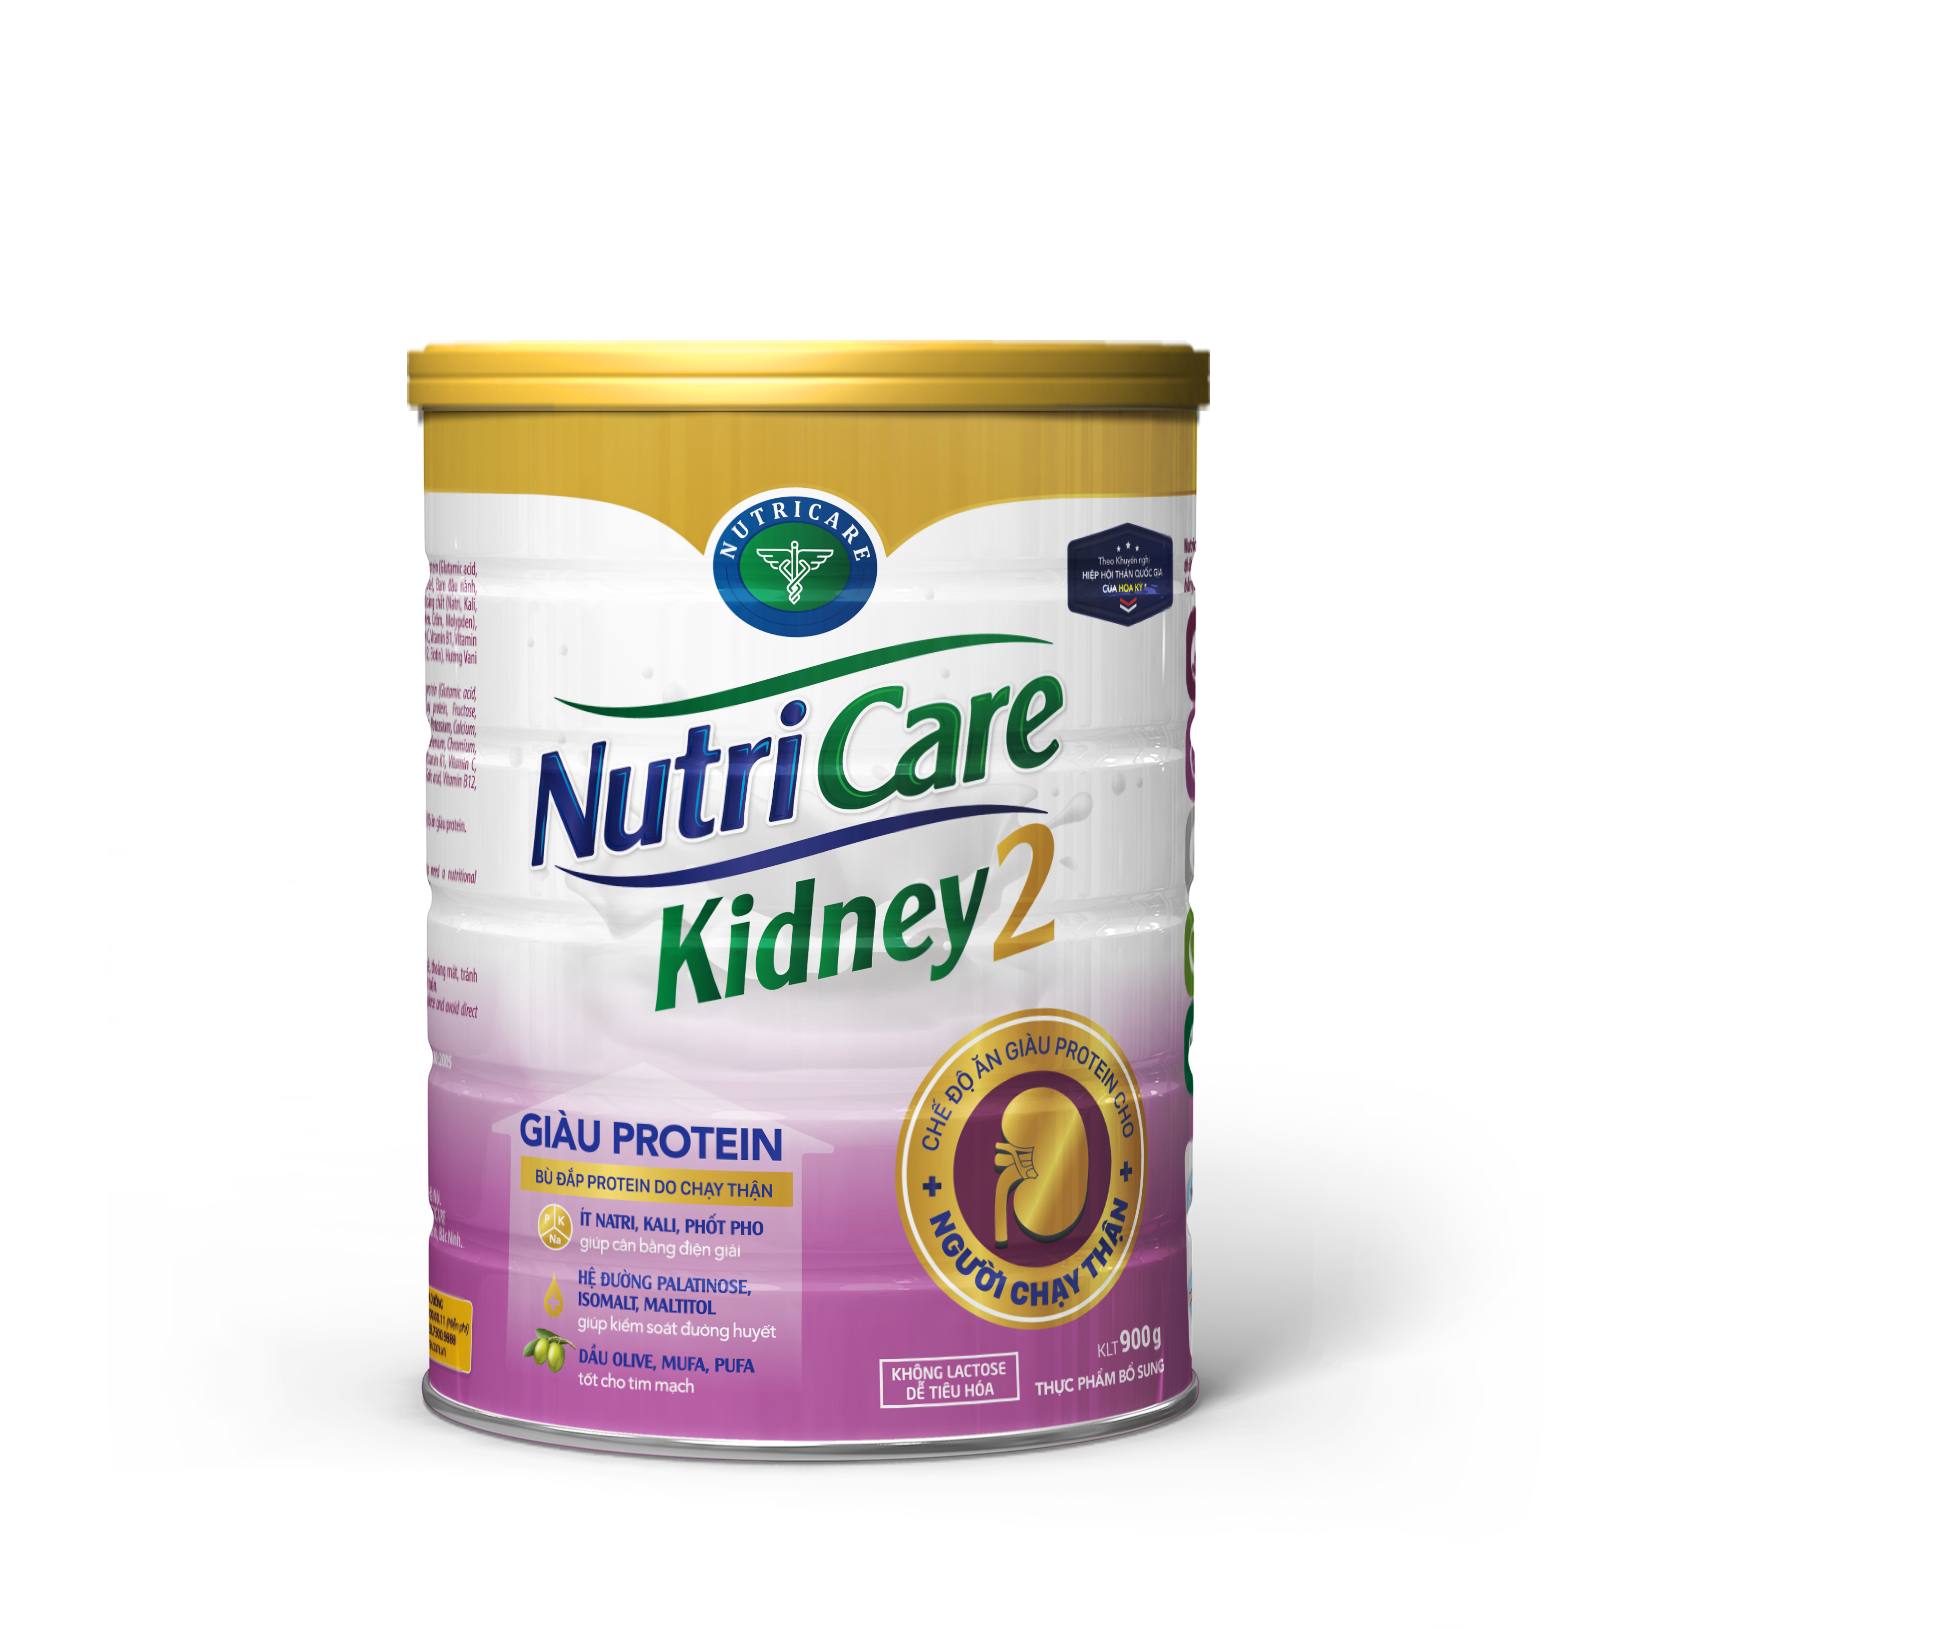 Sữa bột Nutricare Kidney 2 – giàu protein, dinh dưỡng cho người chạy thận nhân tạo (900g)